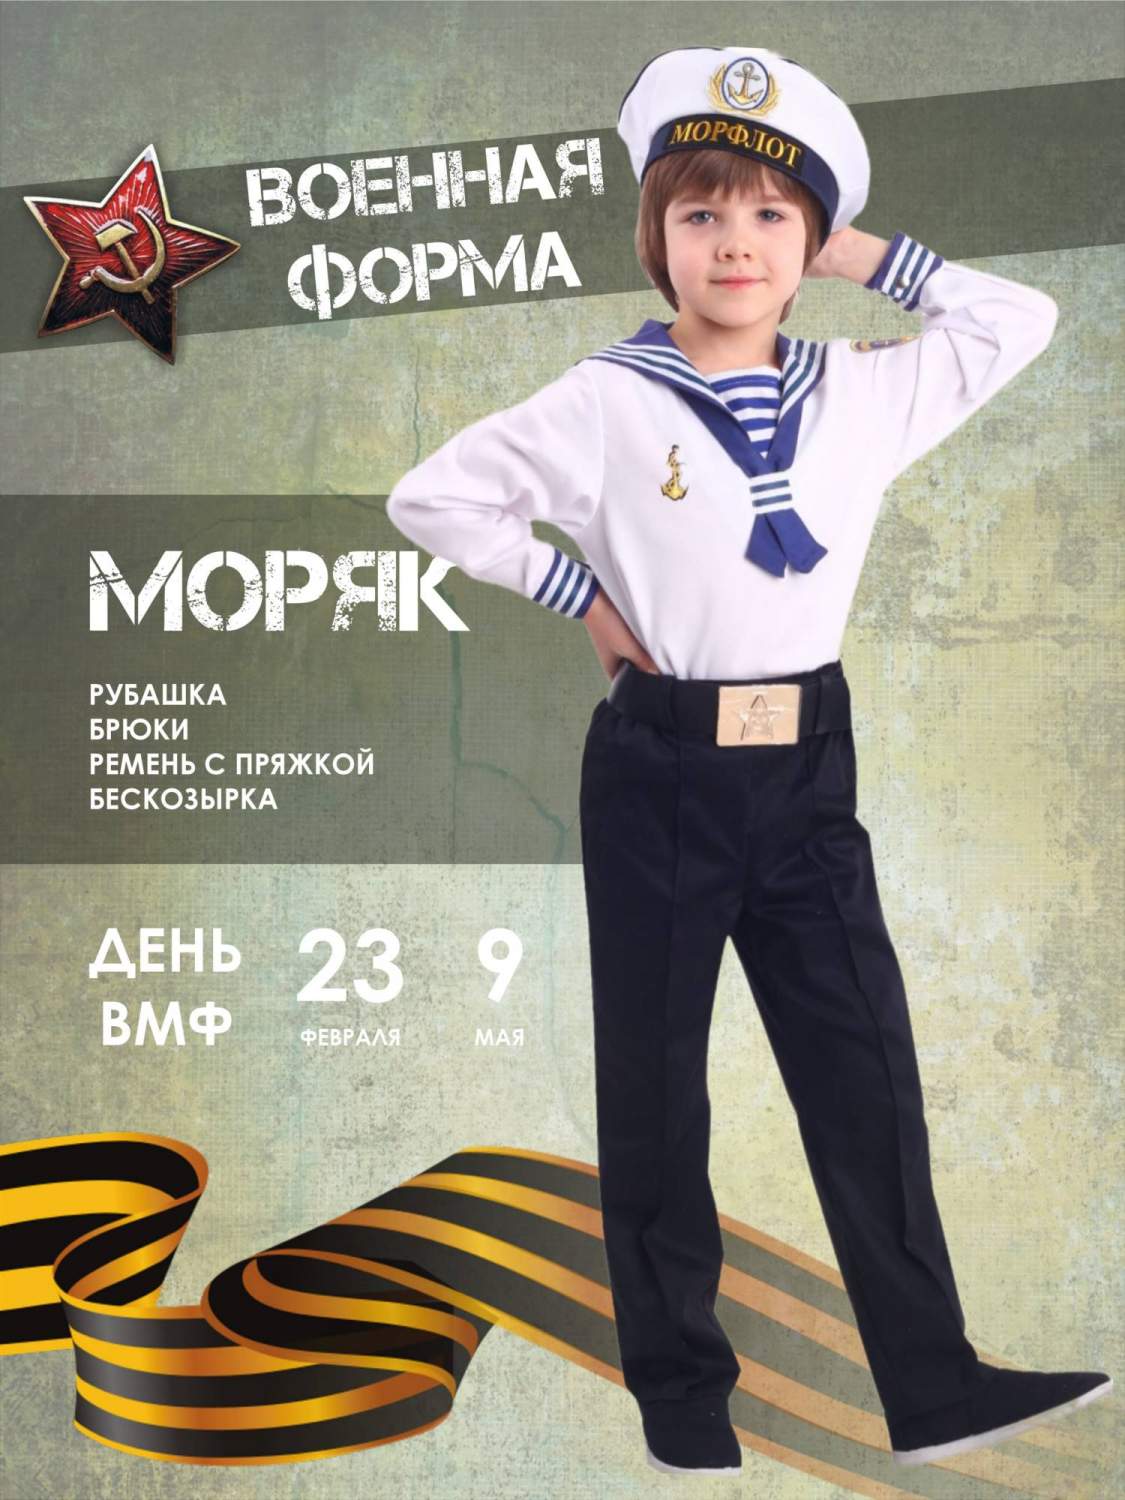 Маскарадный костюм «Морячка» для девочки Купить в Москве, Московской области, России.